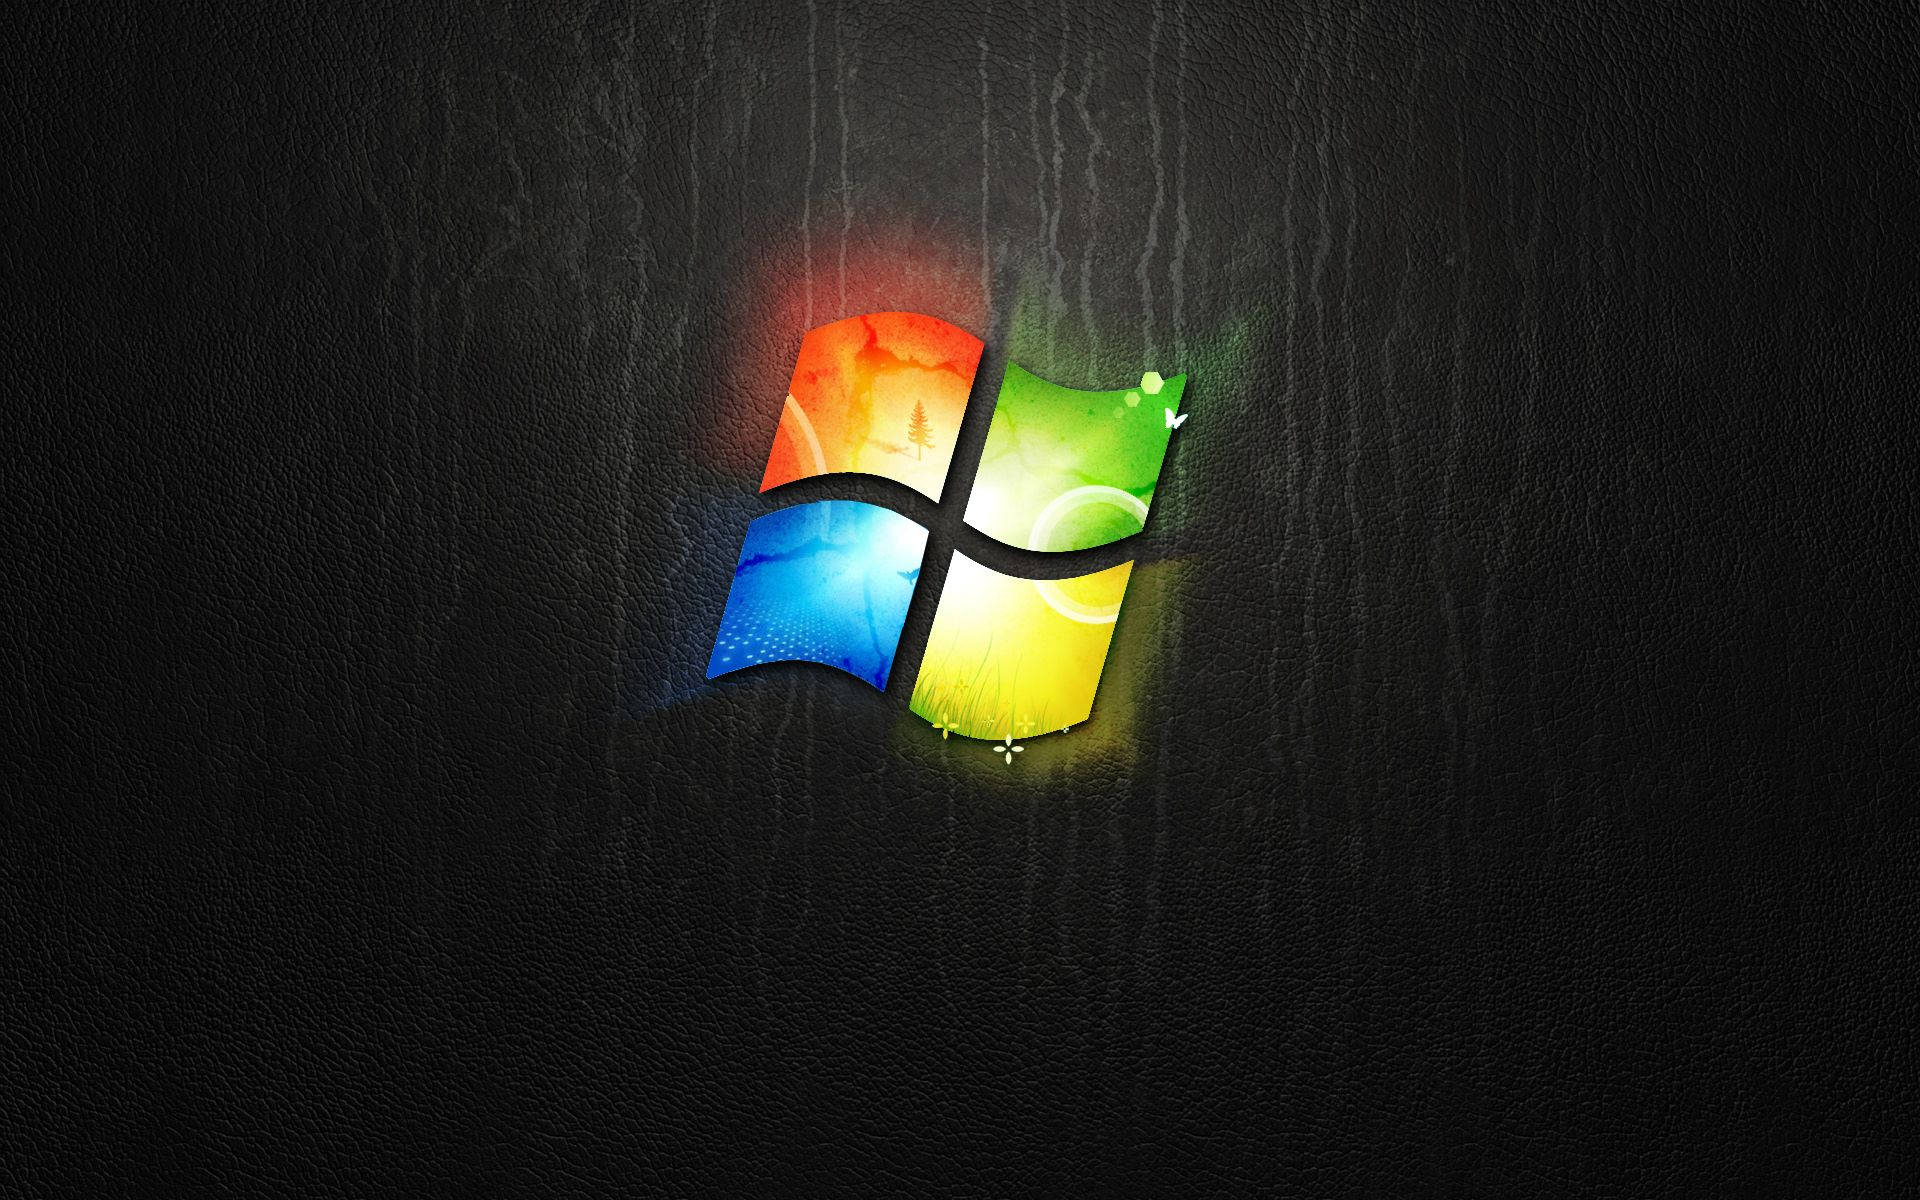 Glowing Windows 10 Wallpaper